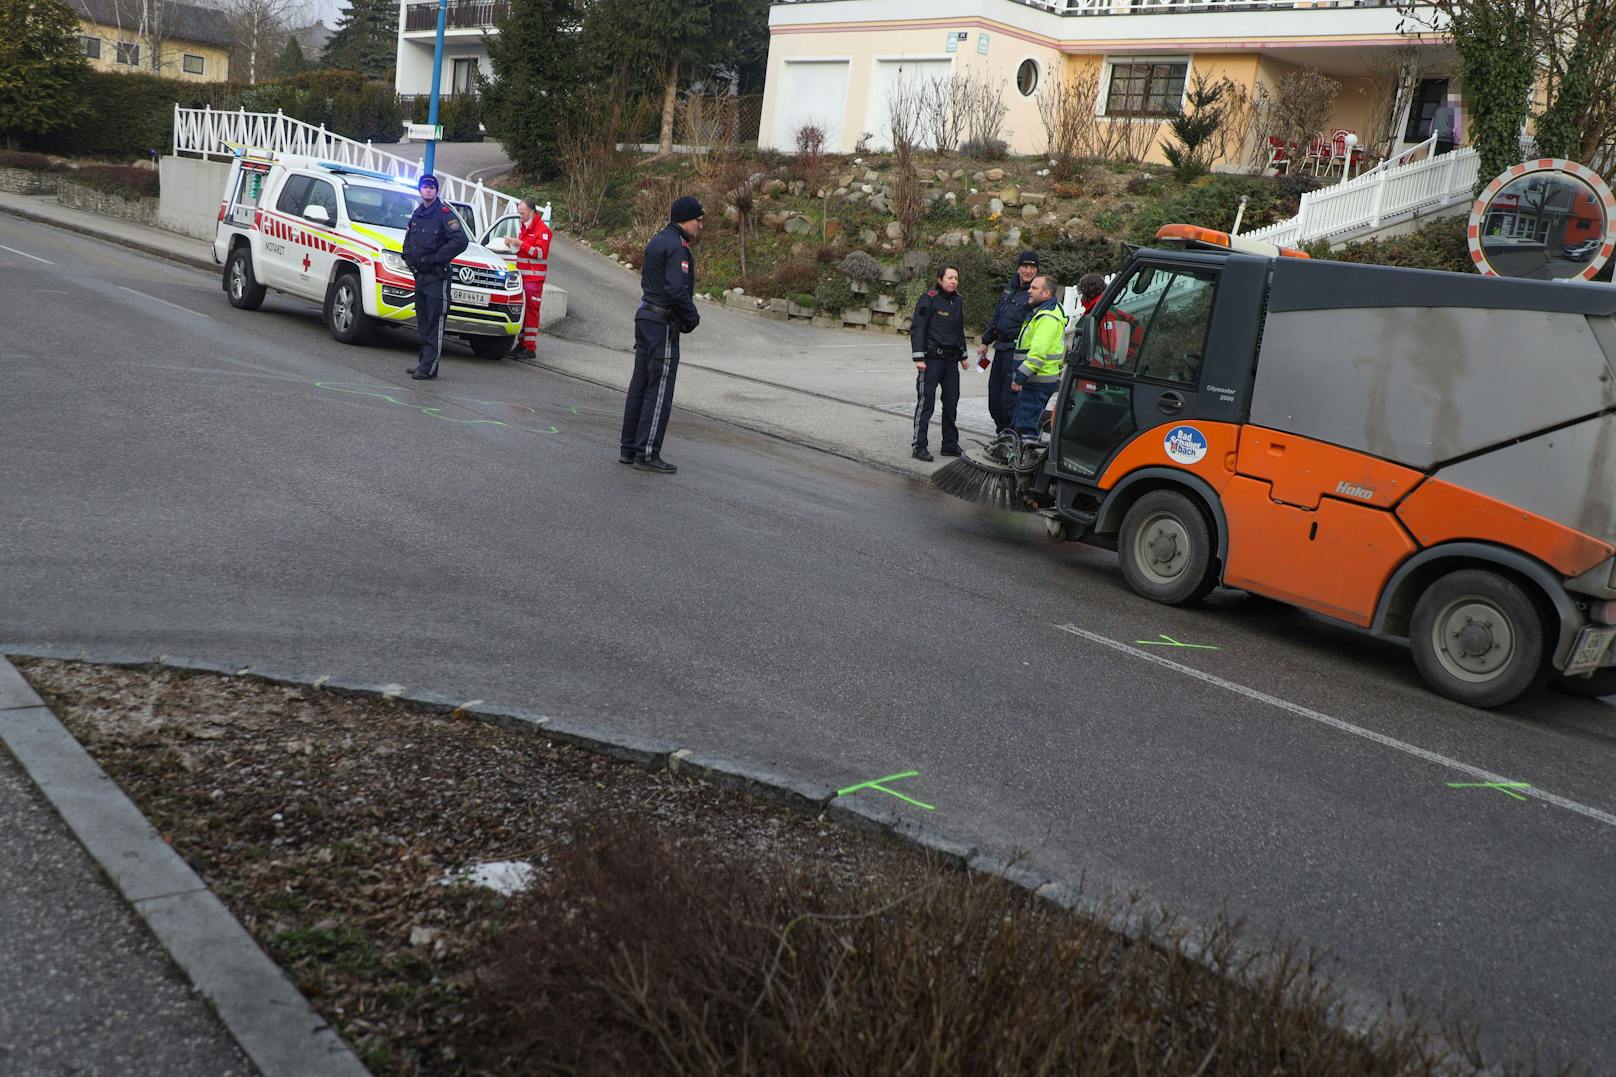 Ein tragischer Unfall hat sich Freitagfrüh in Bad Schallerbach (Bezirk Grieskirchen) ereignet. Eine Autolenkerin ist dabei offenbar von ihrem eigenem PKW überrollt und dabei tödlich verletzt worden.